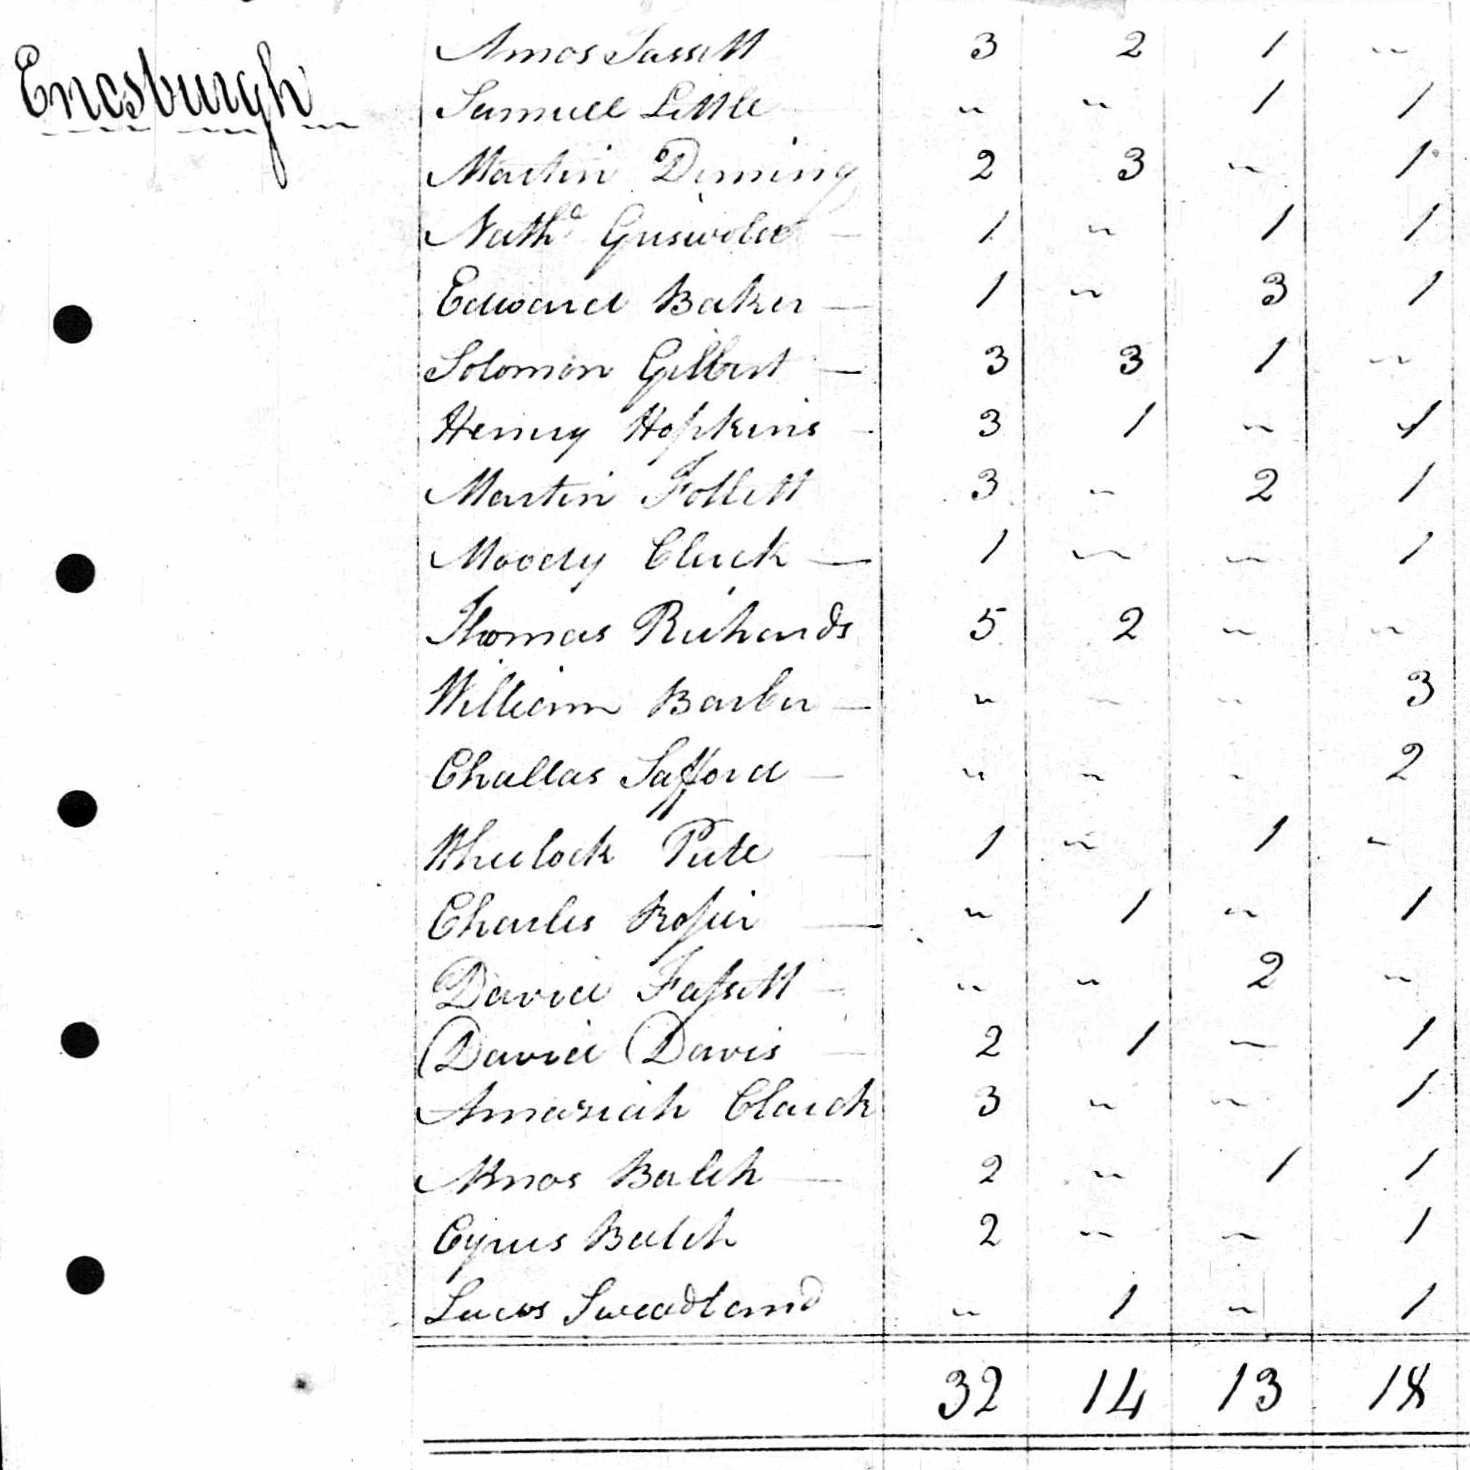 1800 census record